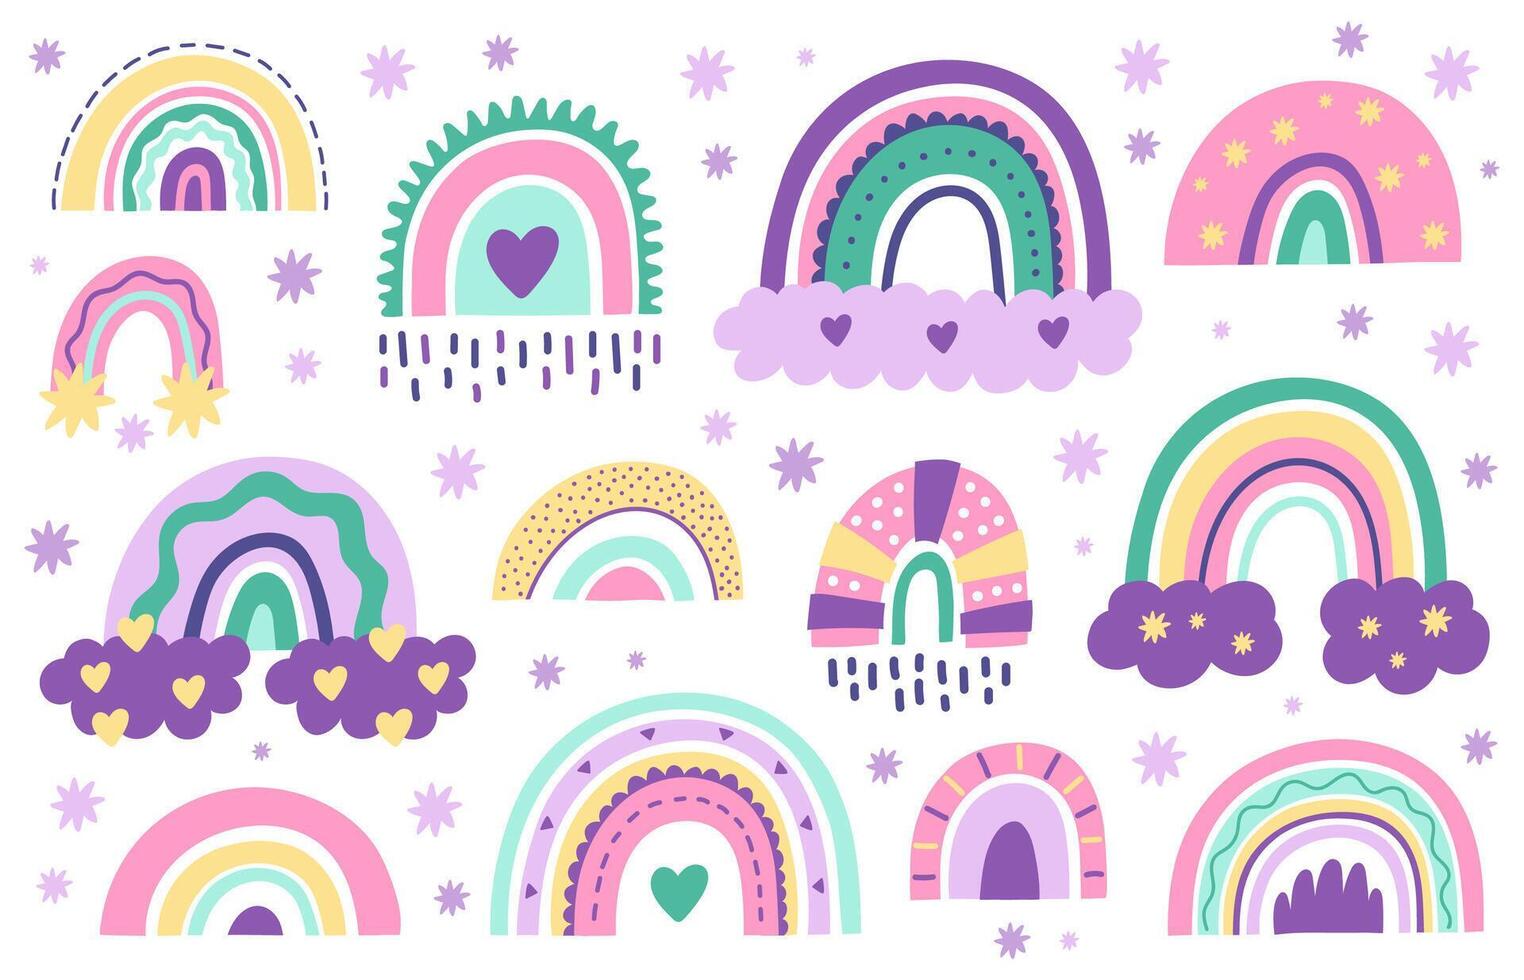 garabatear guardería arcoiris mano dibujado escandinavo estilo arcoíris. bebé ducha, para niños fiesta linda pastel color arco iris vector símbolos conjunto